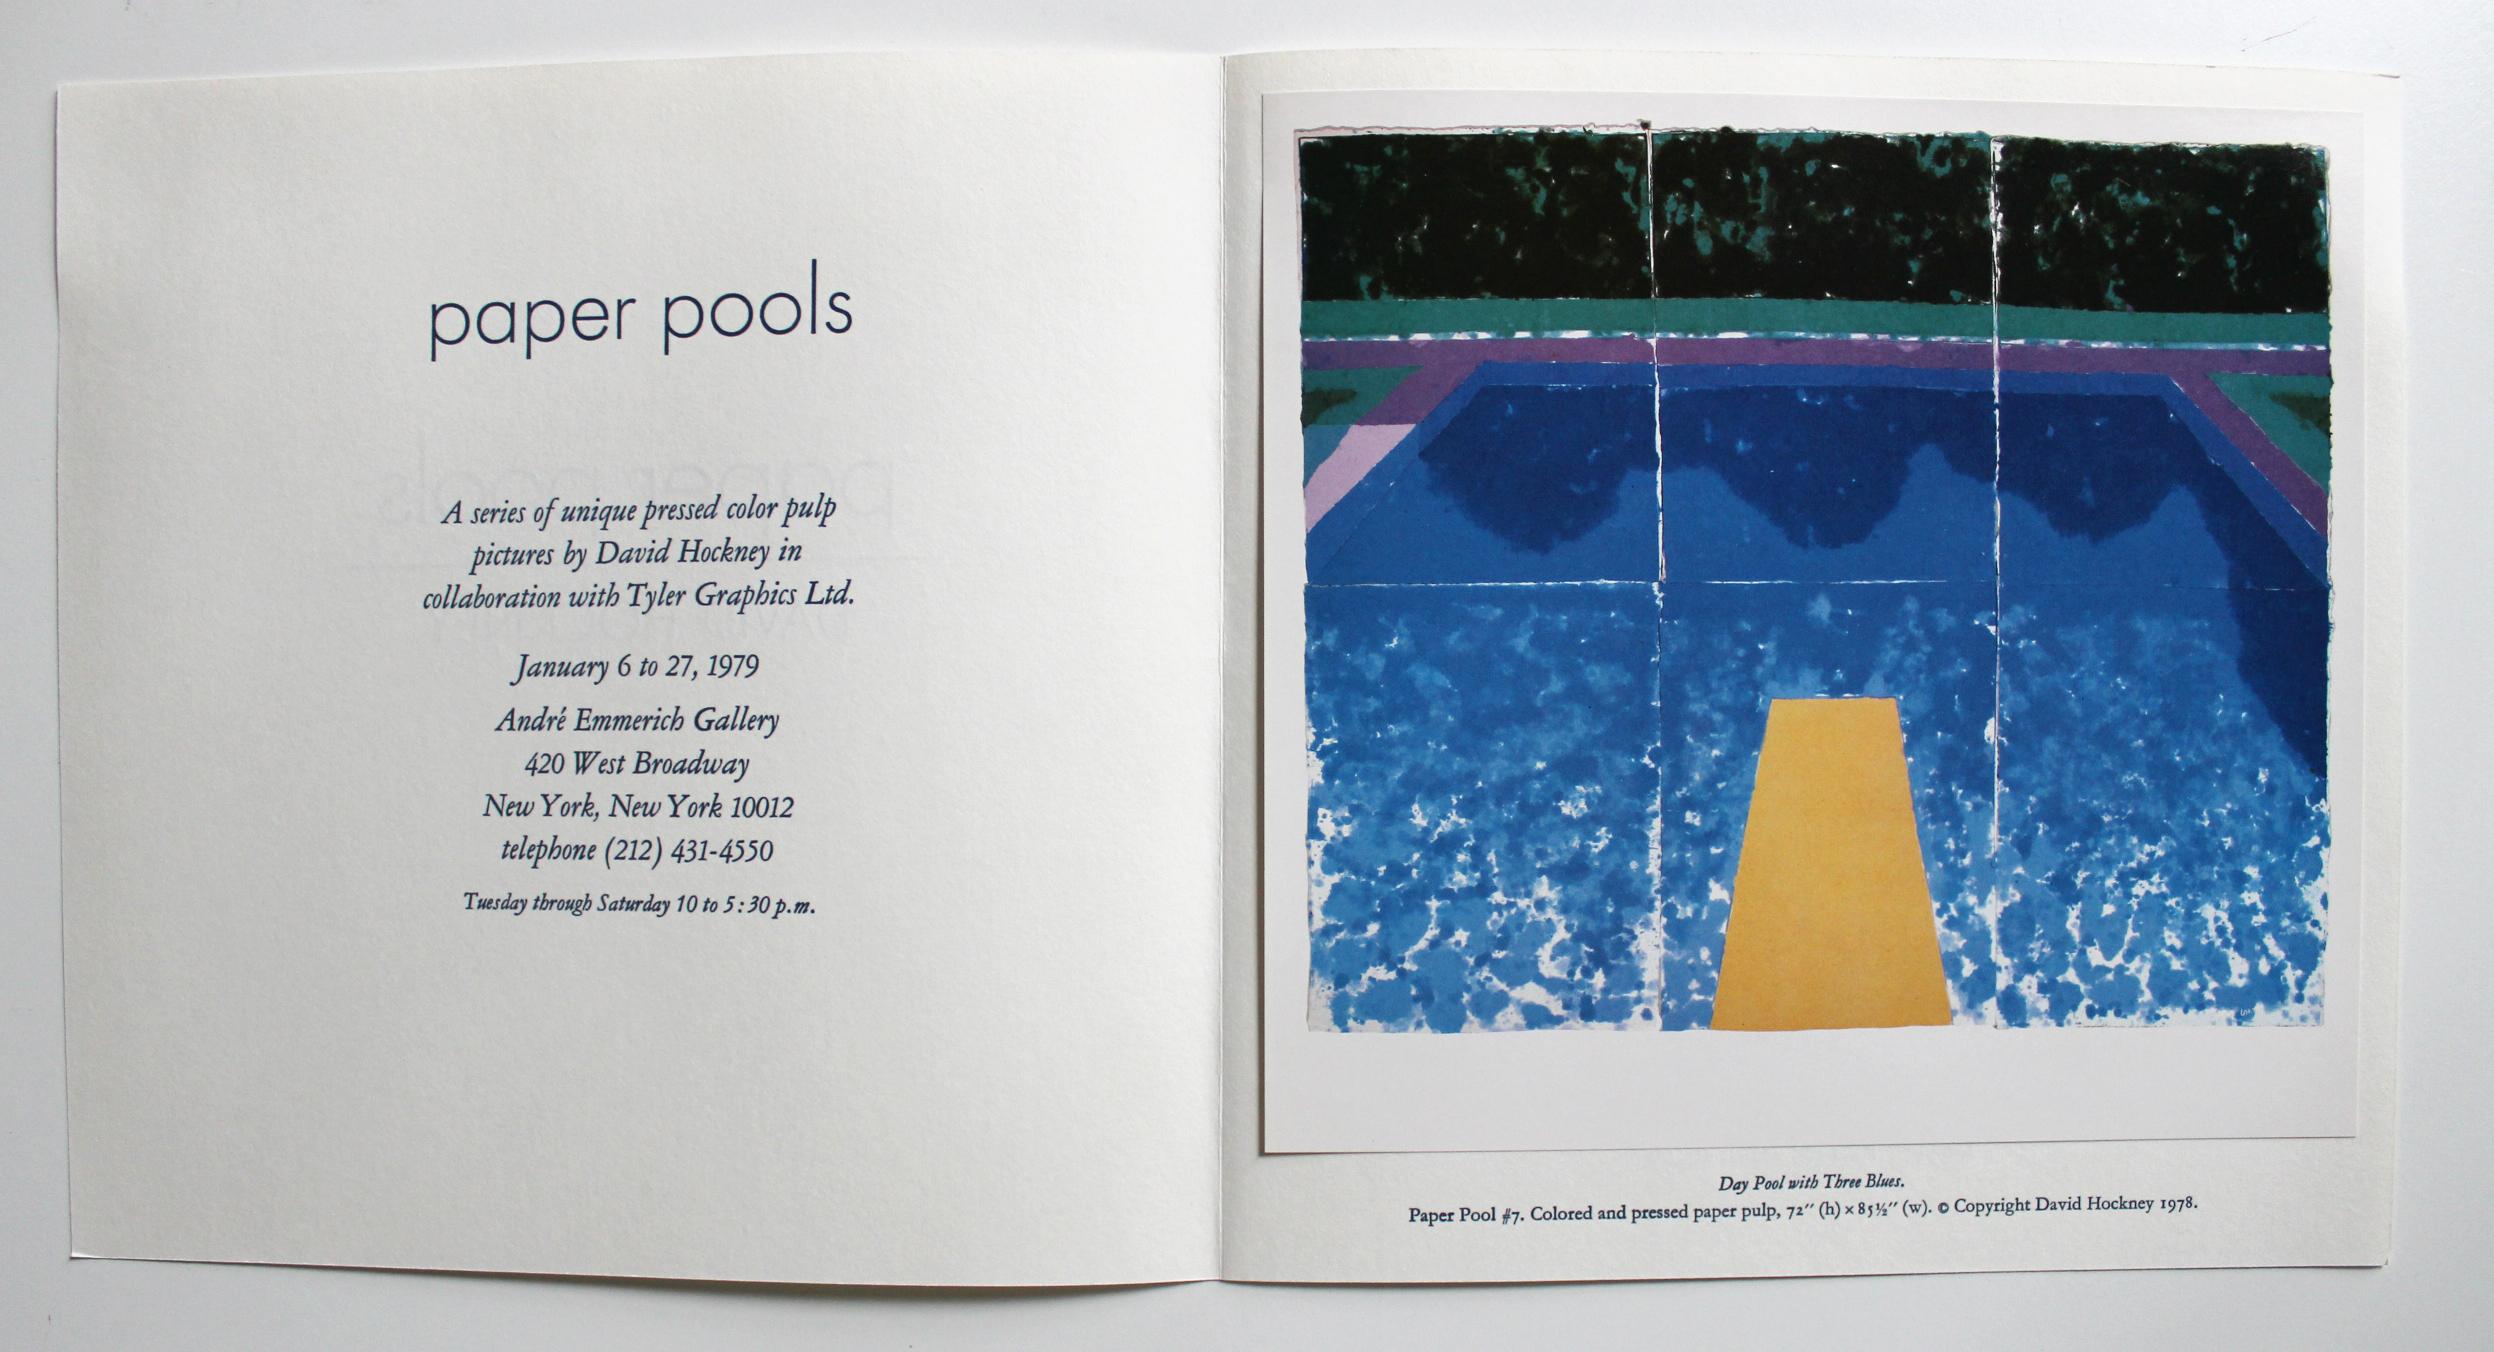 Vendu sans cadre

Réalisé à l'occasion de la collaboration de David Hockney Paper Pools avec Tyler Graphics Ltd en 1979. L'exposition a été présentée à la galerie Andre Emmerich à New York du 6 au 27 janvier 1979. 
 
À l'intérieur de l'invitation